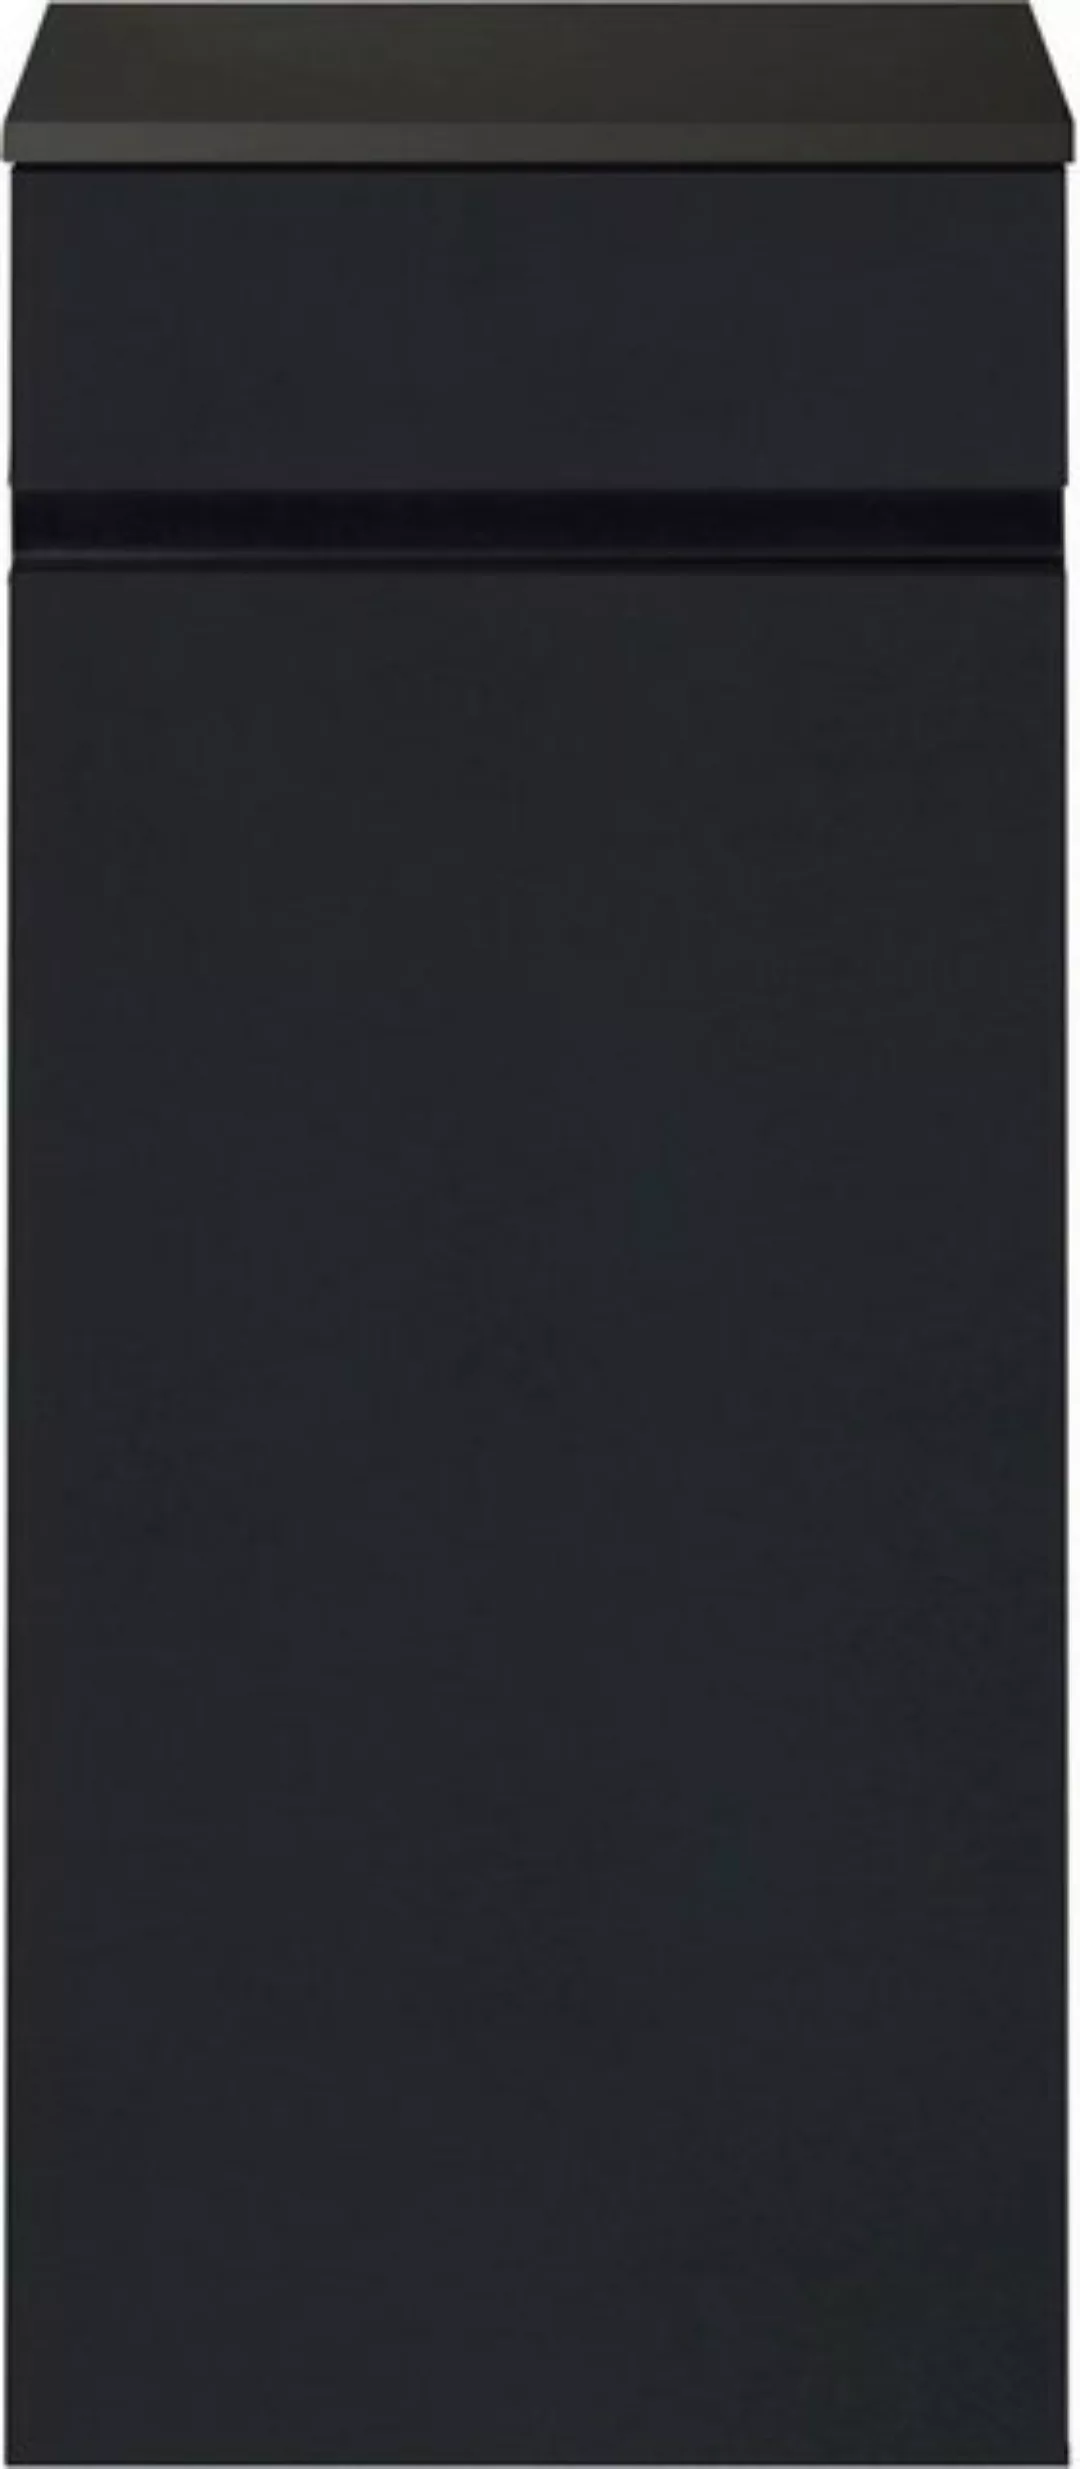 MARLIN Midischrank 3510clarus 40 cm breit, Soft-Close-Funktion, vormontiert günstig online kaufen